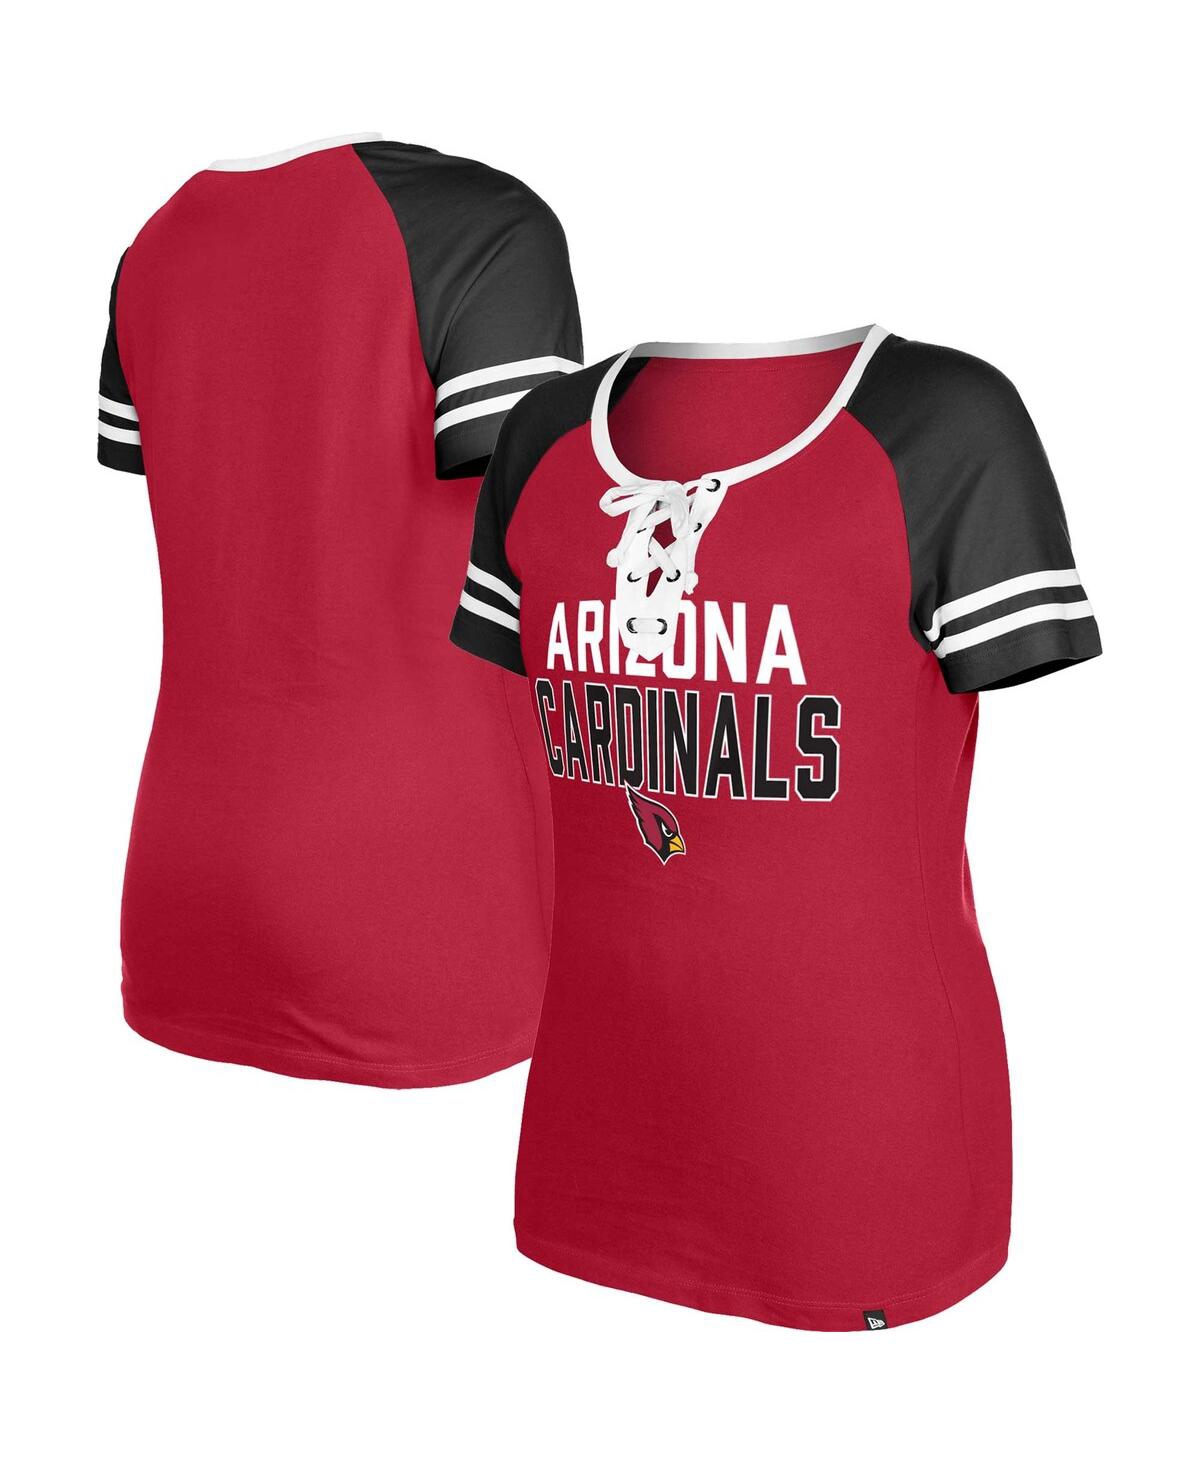 Women's New Era Cardinal Arizona Cardinals Raglan Lace-Up T-shirt - Cardinal